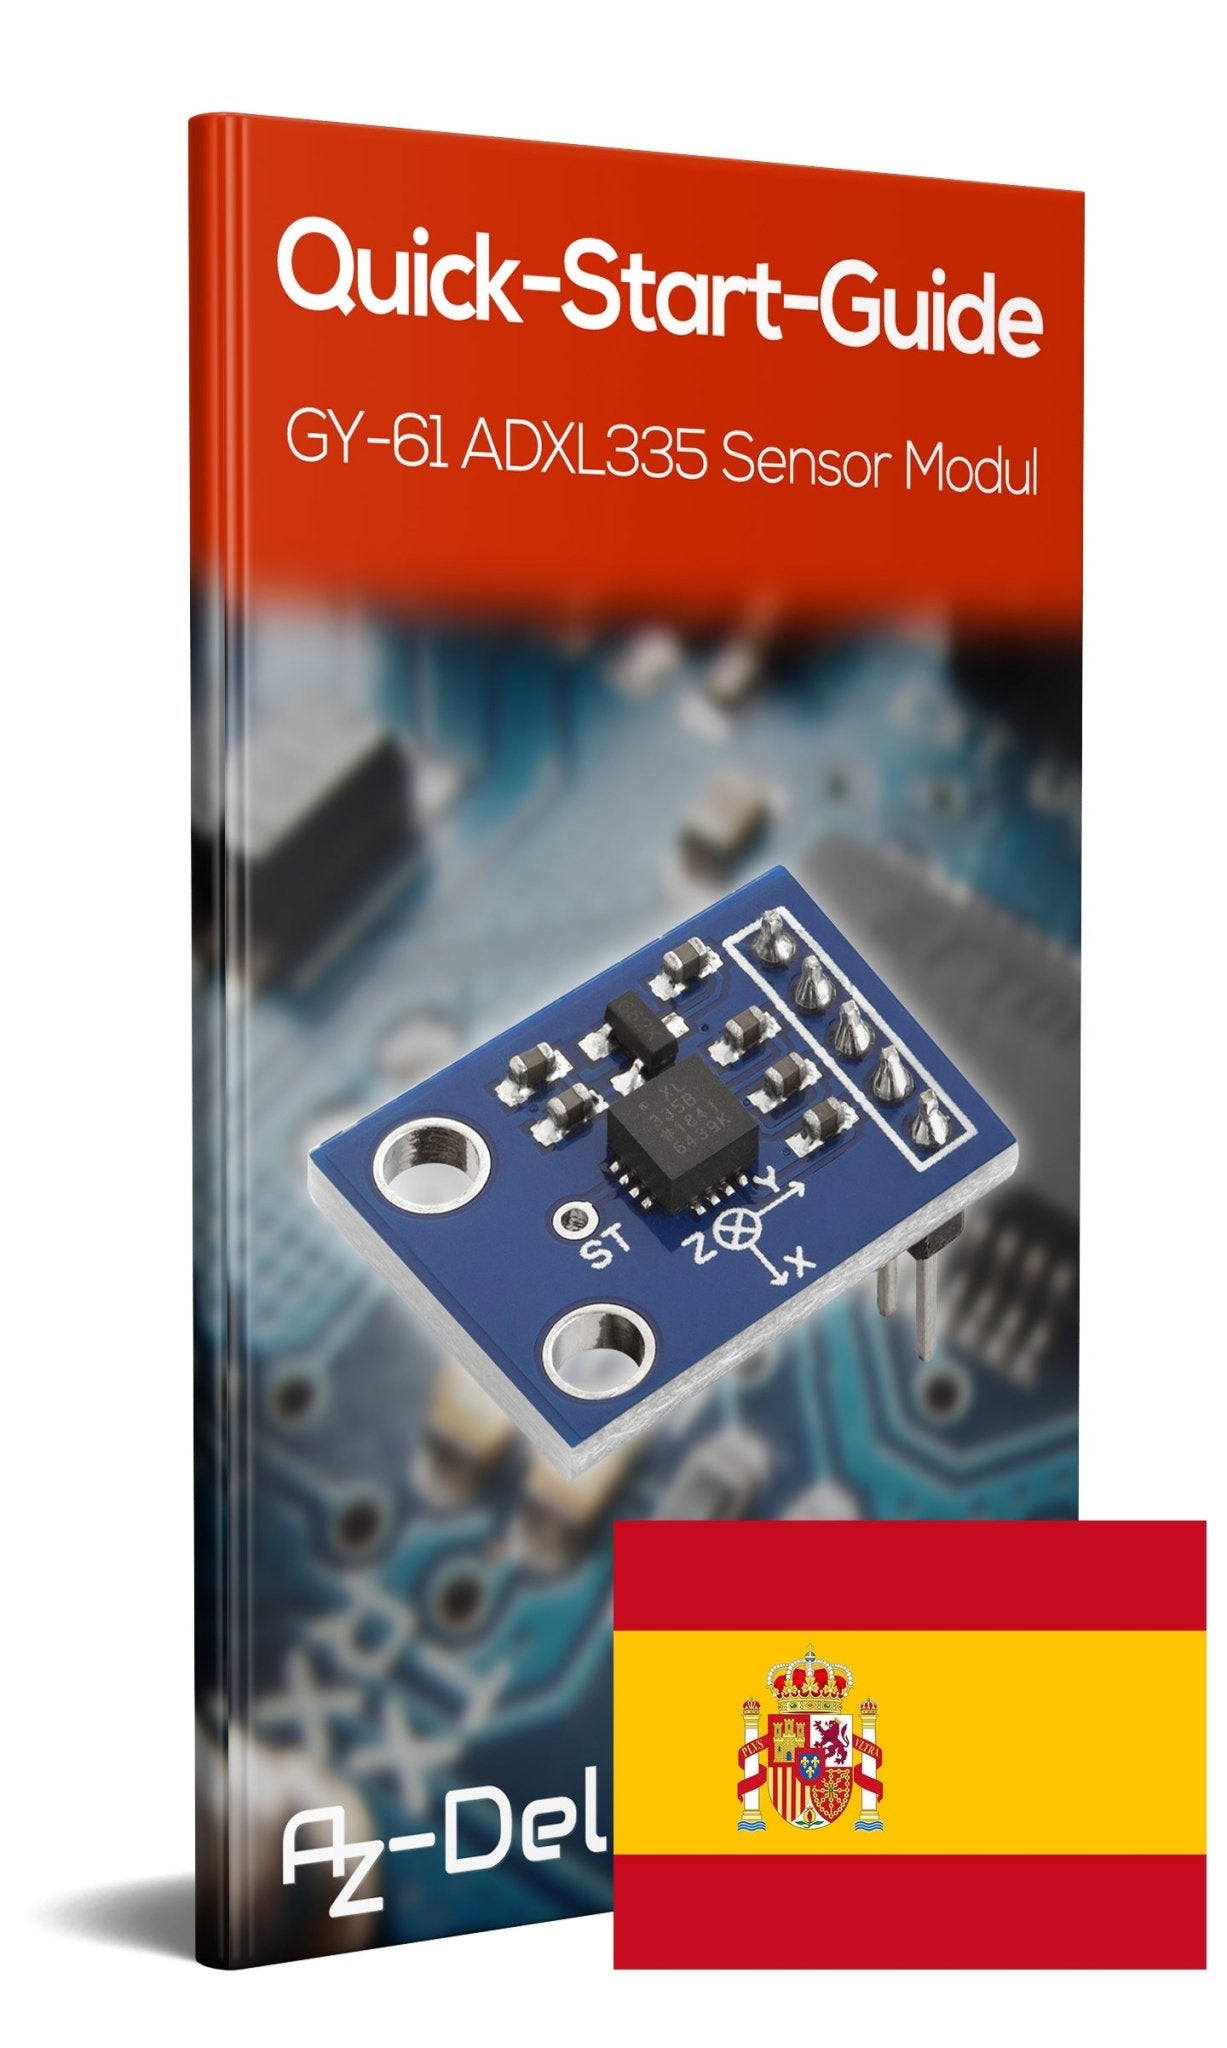 GY-61 ADXL335 Beschleunigungssensor 3-Axis Neigungswinkel Modul - AZ-Delivery